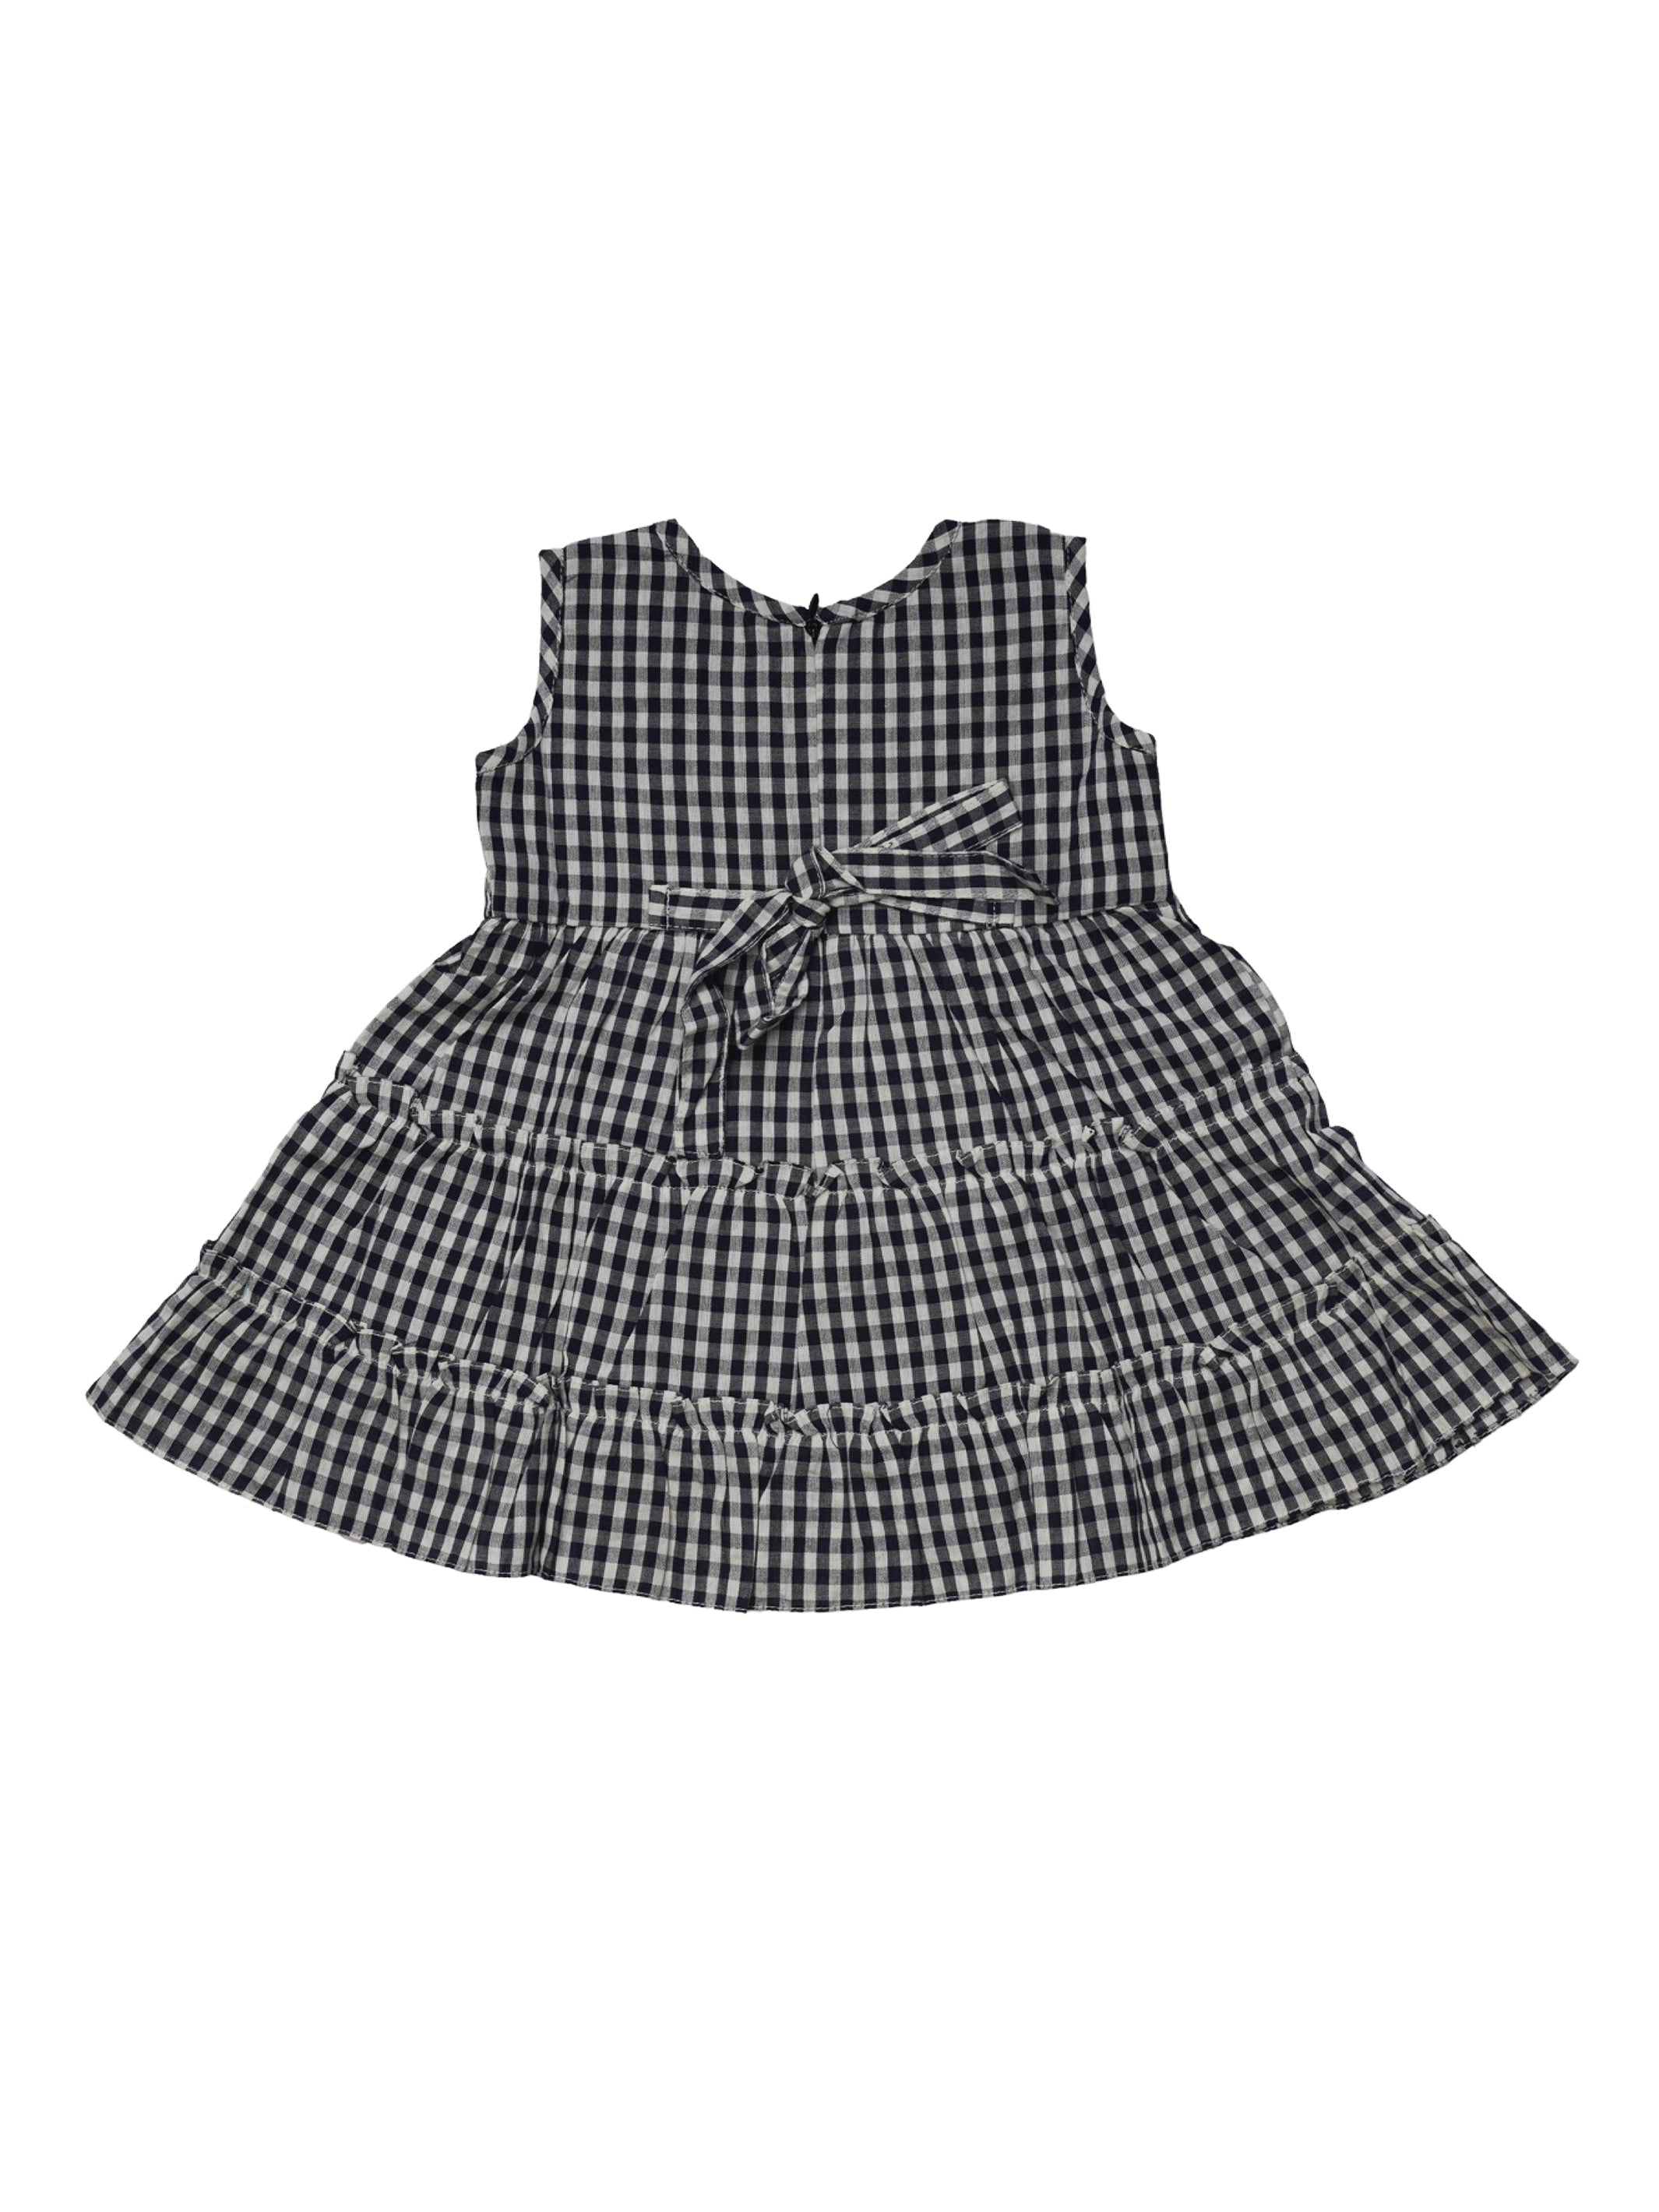 Gingham check print crepe maxi shirtdress-CL0056469 | Pakaian wanita,  Pakaian model, Kemeja wanita